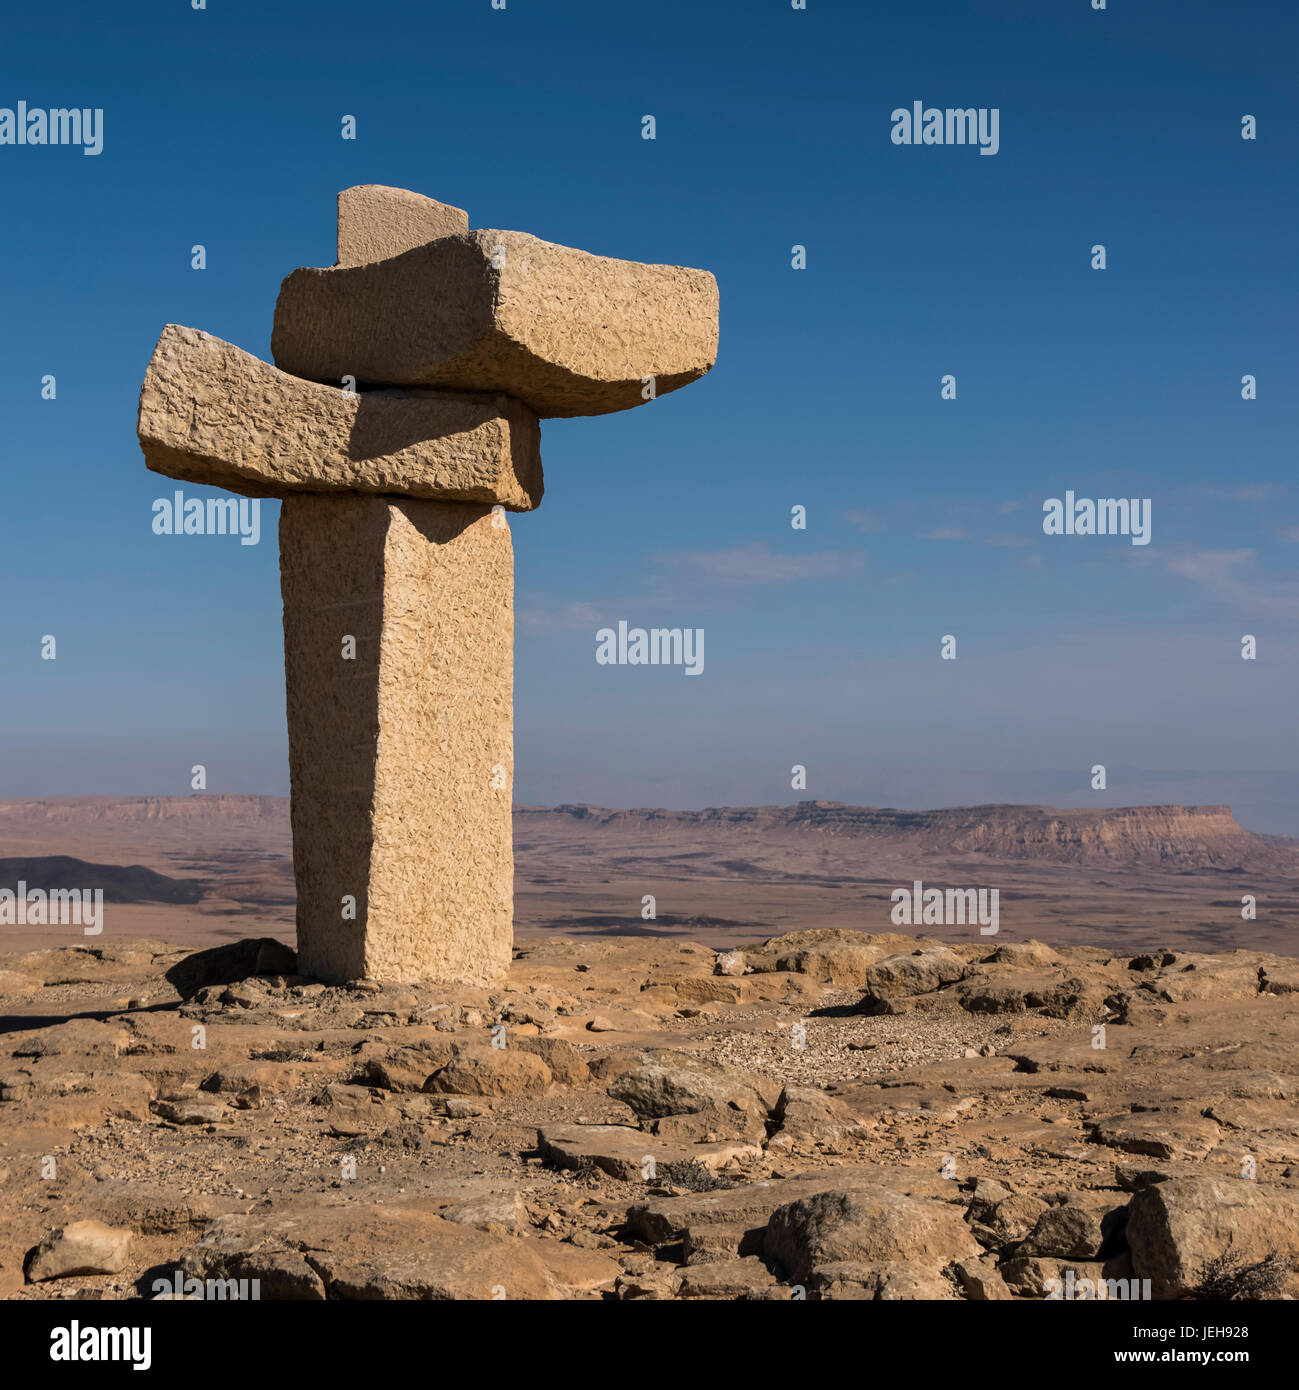 La sculpture sur pierre à la pointe nord du cratère de Ramon, désert du Néguev, Mitzpe Ramon, District Sud, Israël Banque D'Images